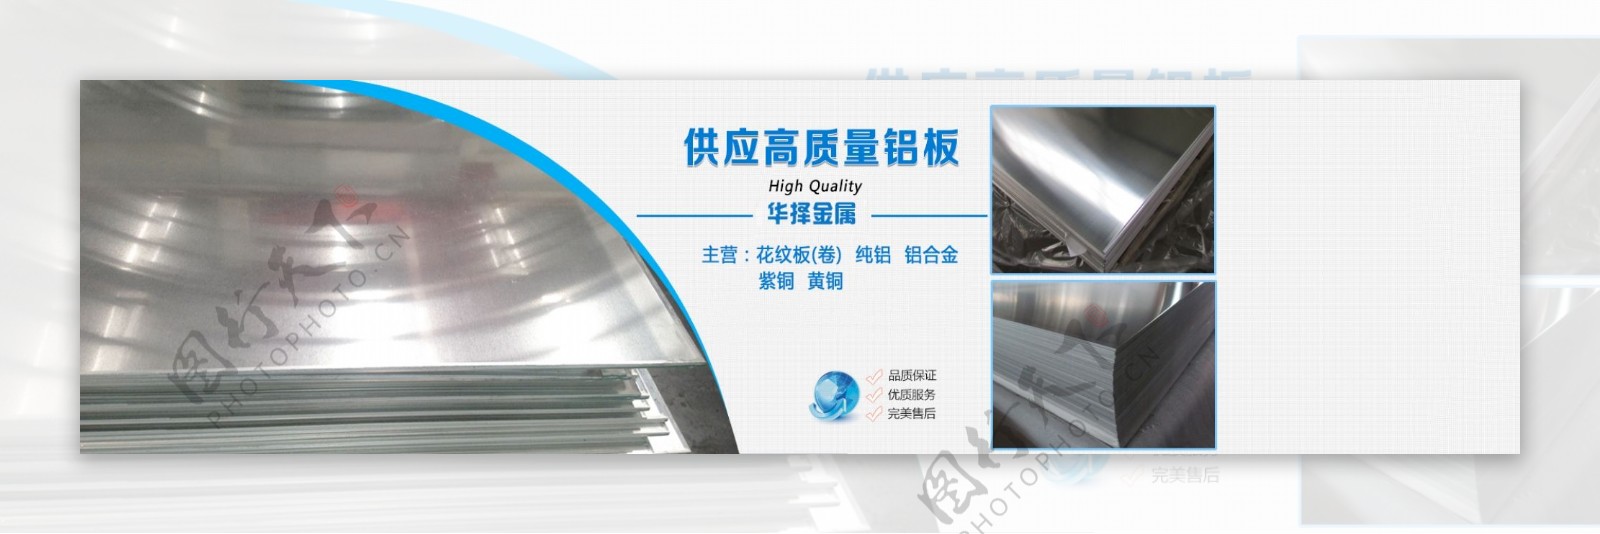 供应高质量铝板广告设计